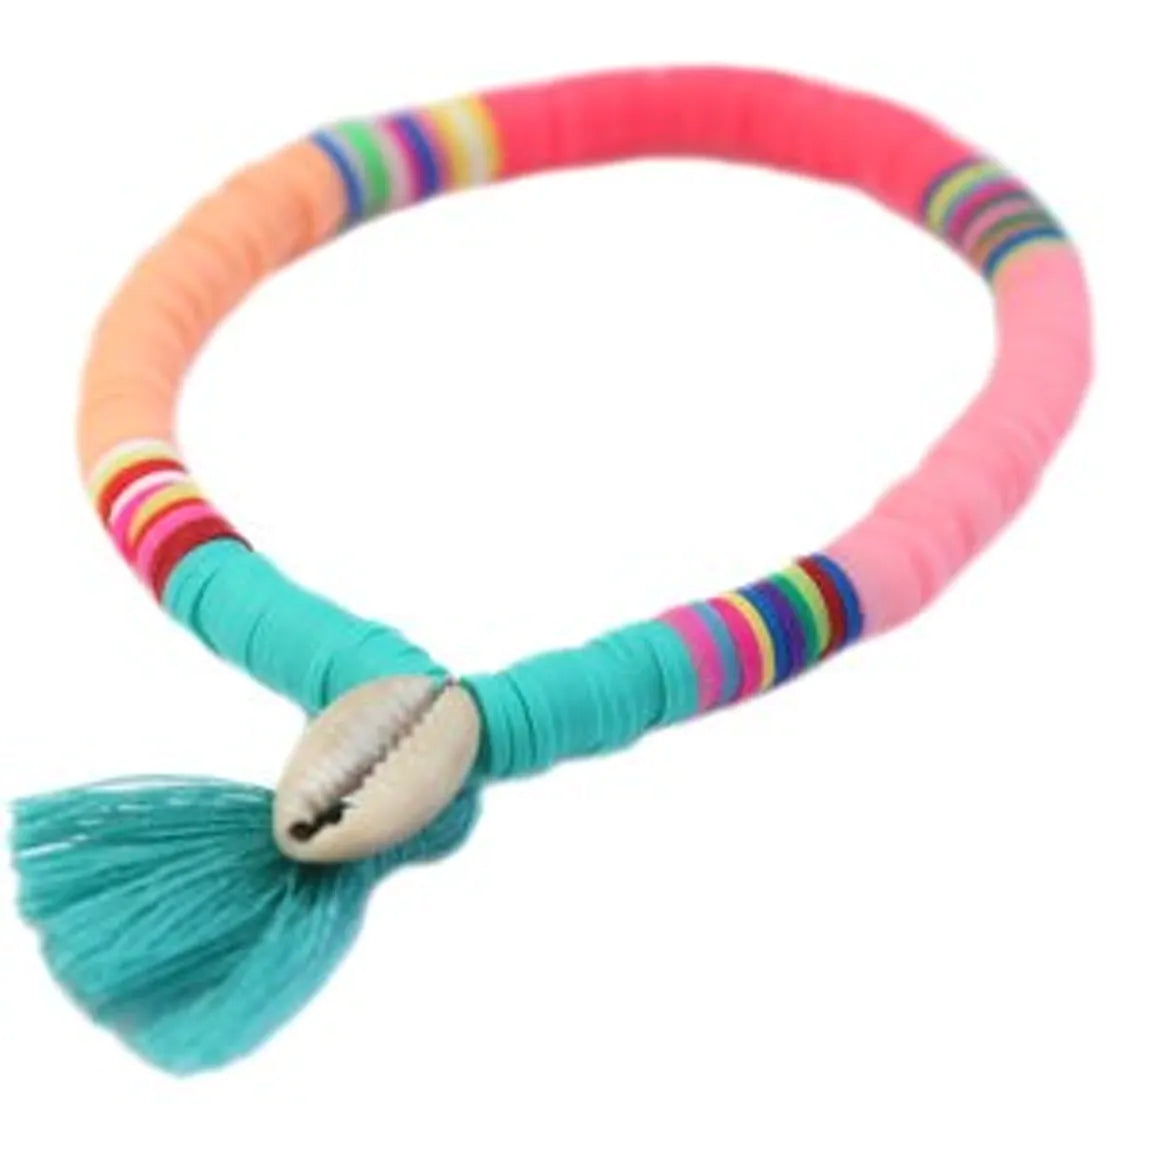 Ibiza Candy Bracelet - Turquoise Tassel Shell